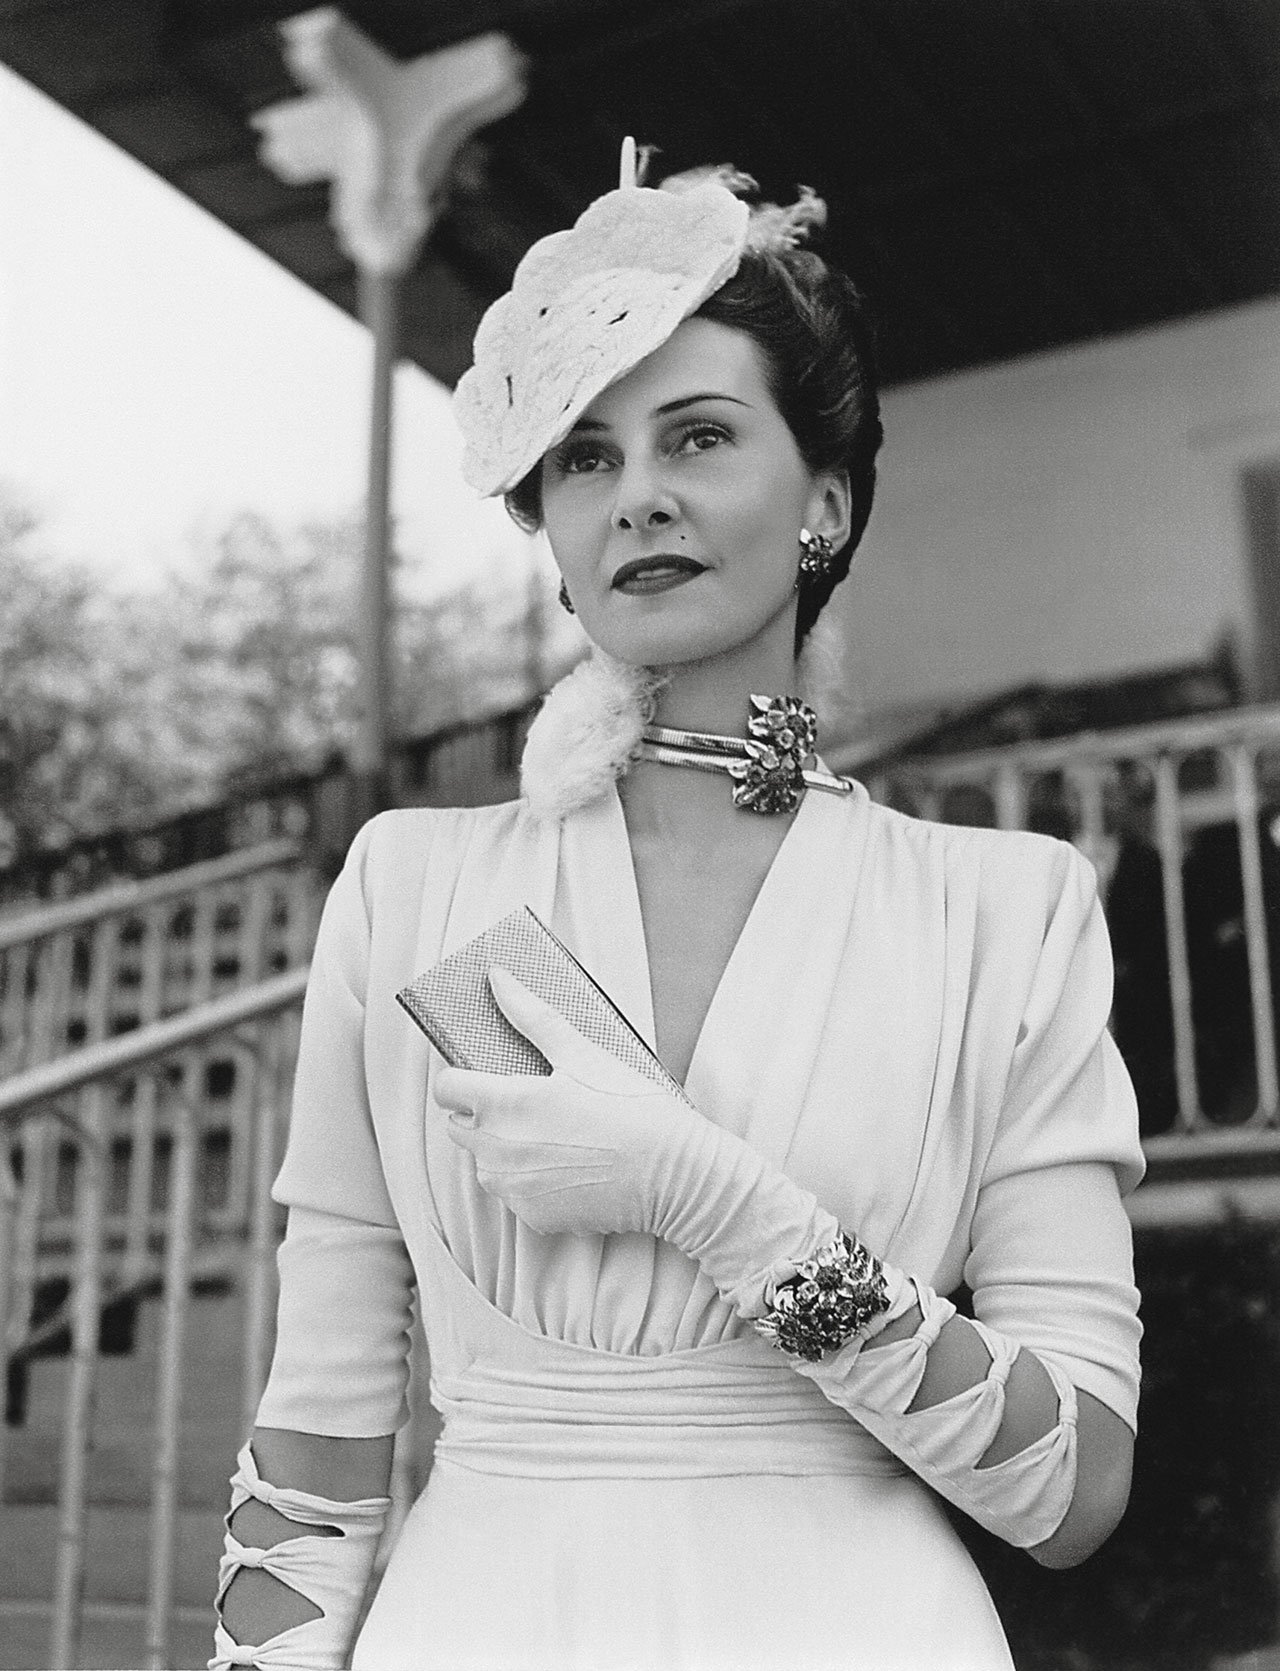 Hélène Arpels at the Prix de Diane in Chantilly, June 4, 1939. She is wearing a Passe-partout necklace and bracelet. Bibliothèque nationale de France / photo by the Séeberger brothers.